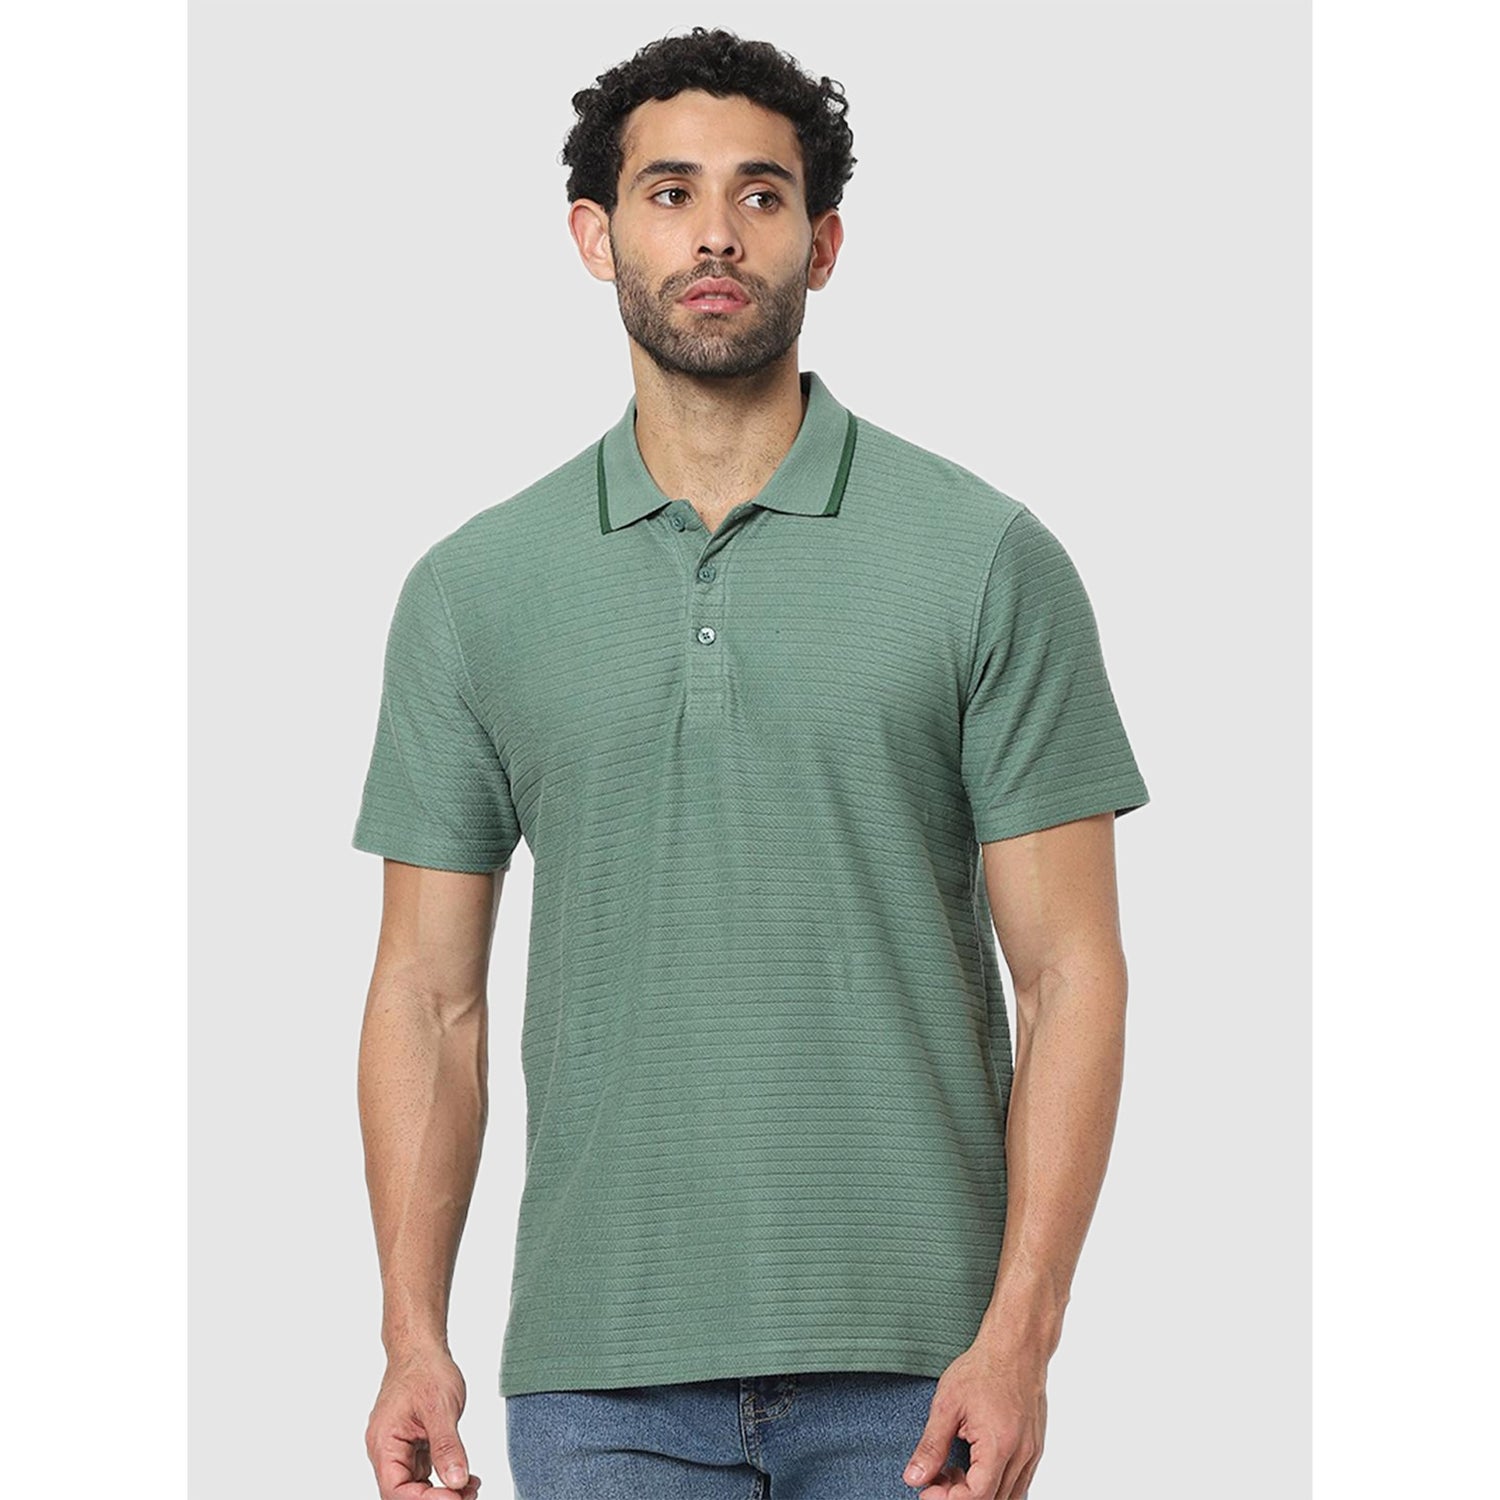 Green Polo Collar T-shirt (CEPINGIN)